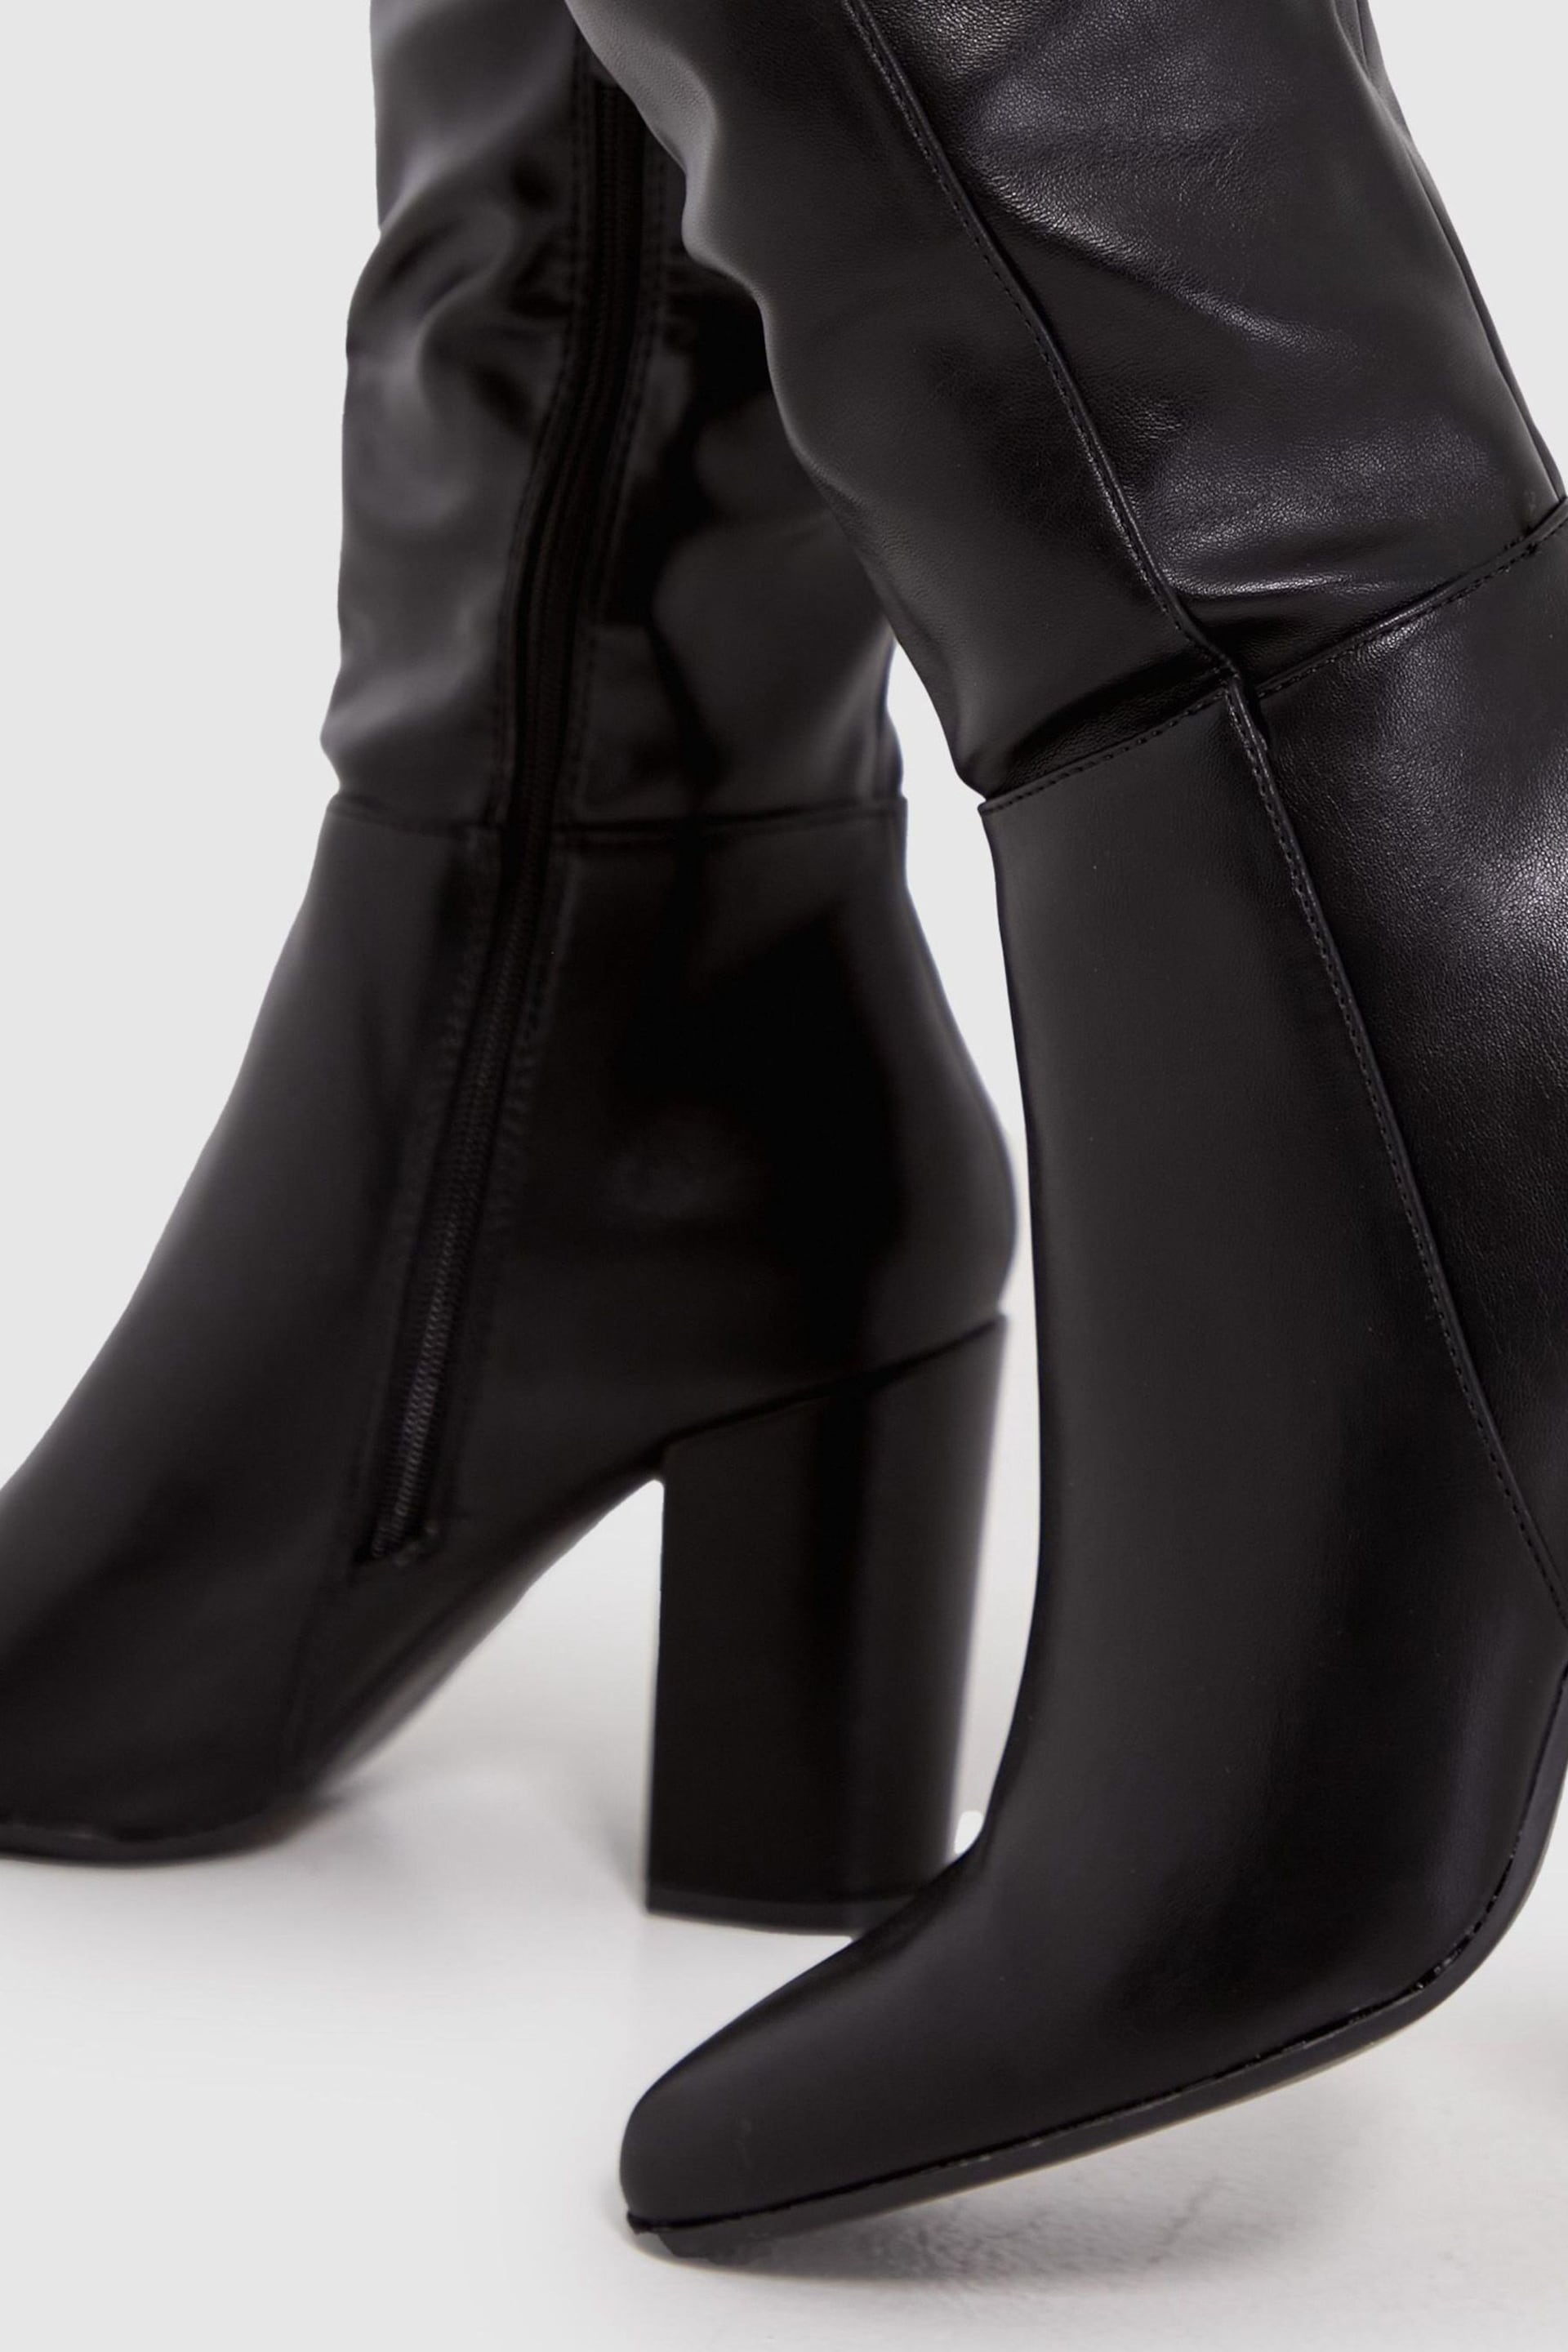 Schuh Black Delta Block Heel Knee Boots - Image 3 of 4